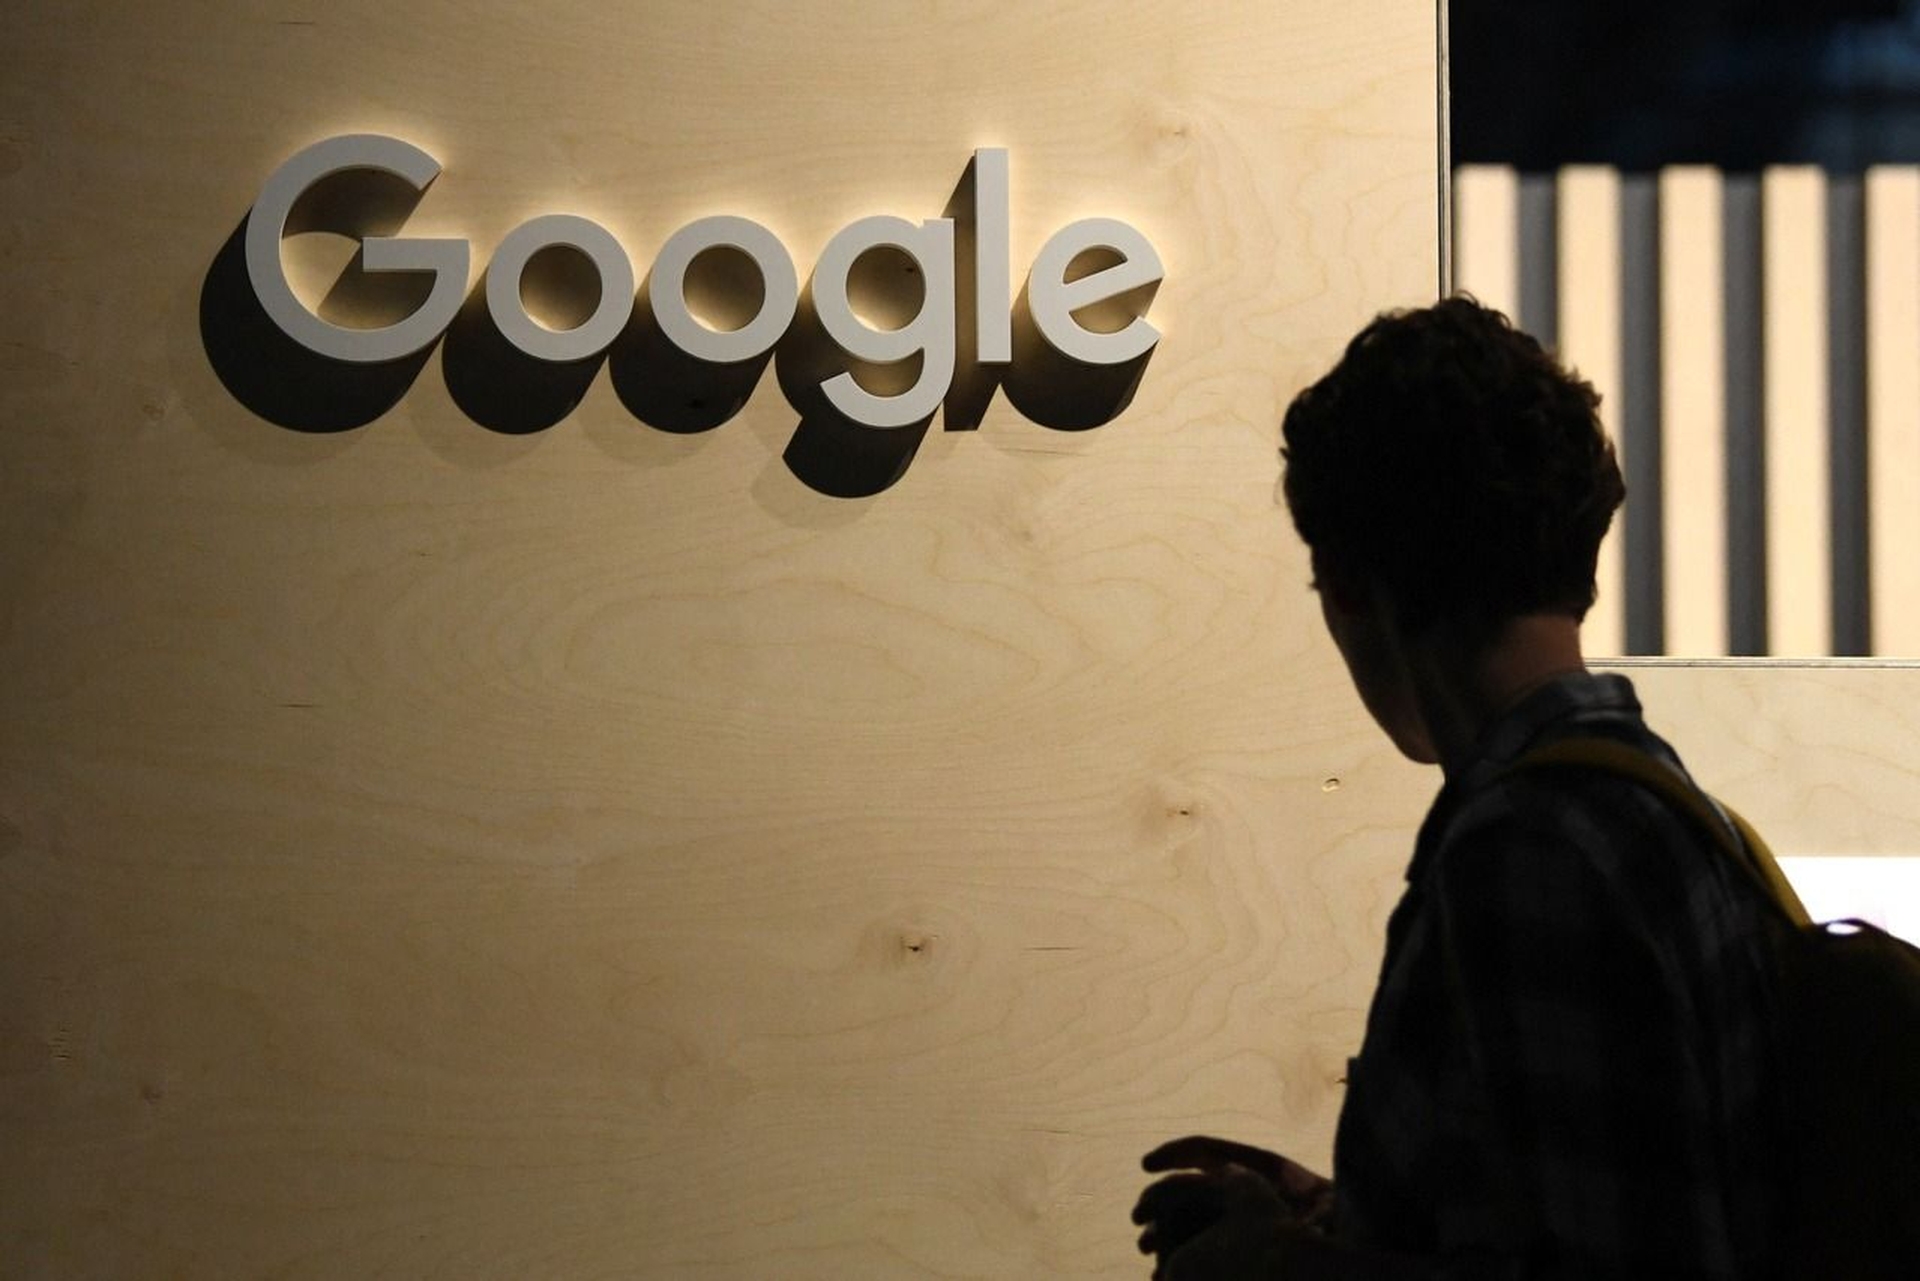 Google coloca engenheiro de licença depois que ele afirma que o chatbot é senciente